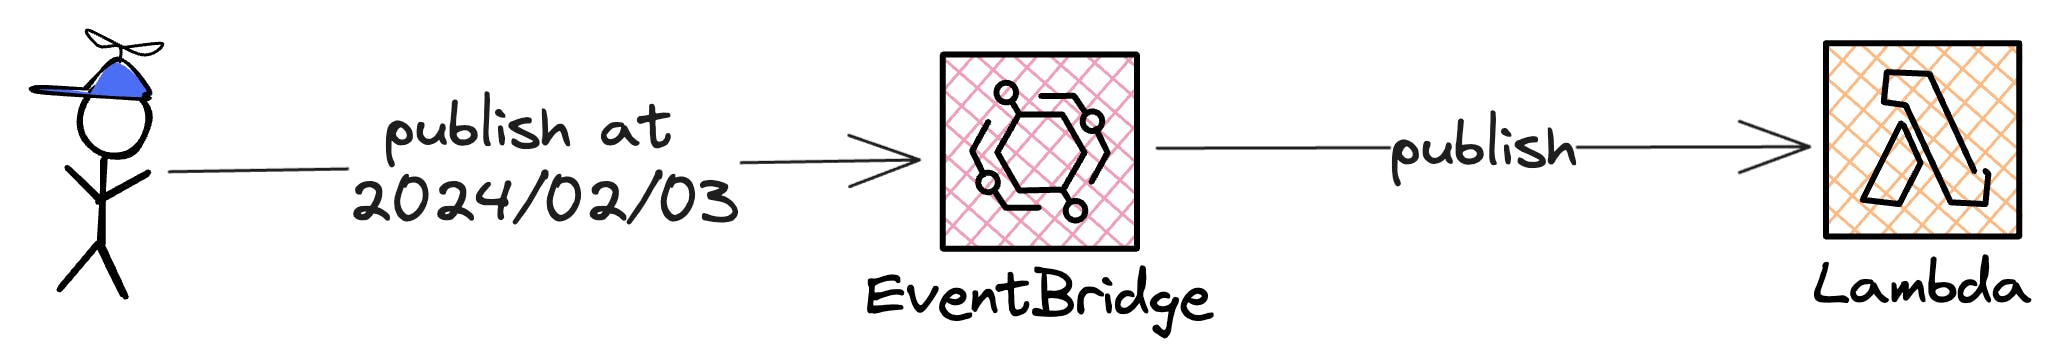 eventbridge scheduler example